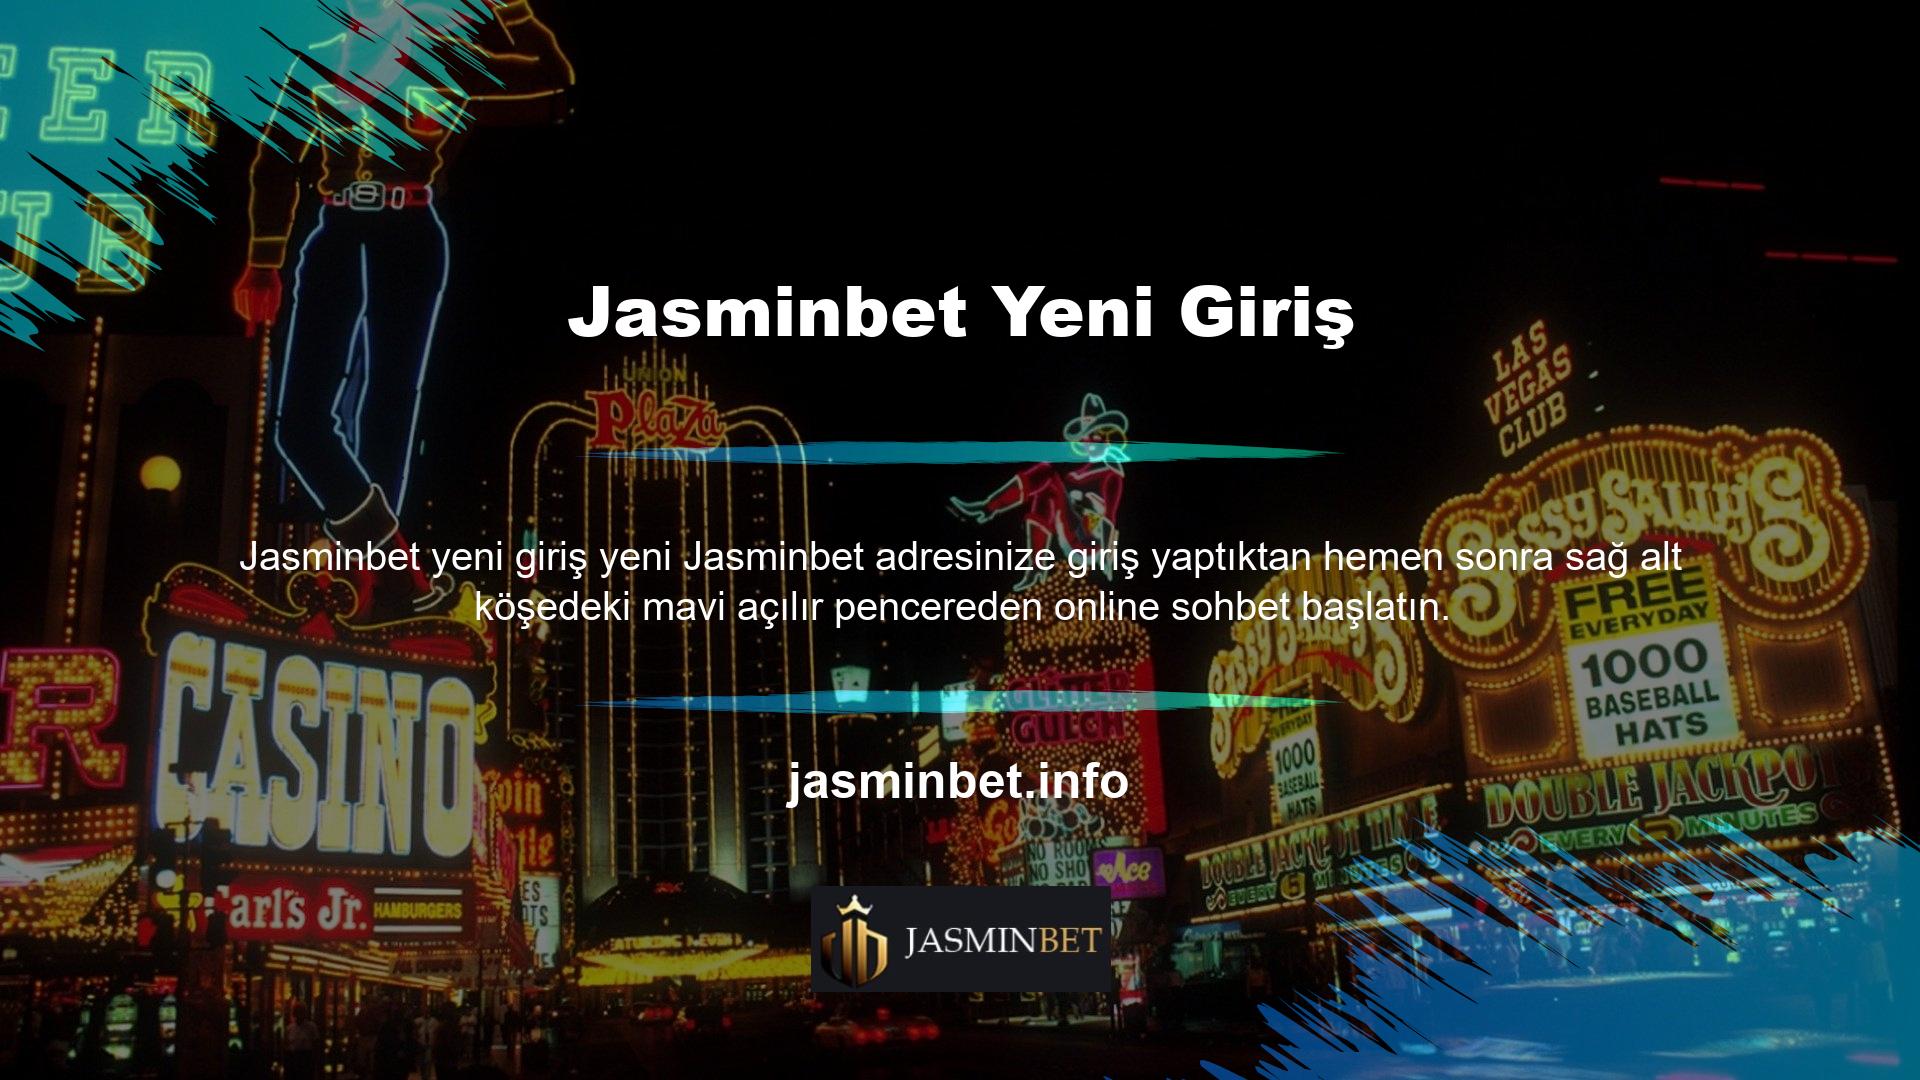 E-posta ile iletişim; tüm soruların ayrıntılı yanıtları her zaman @Jasminbet yeni adresi